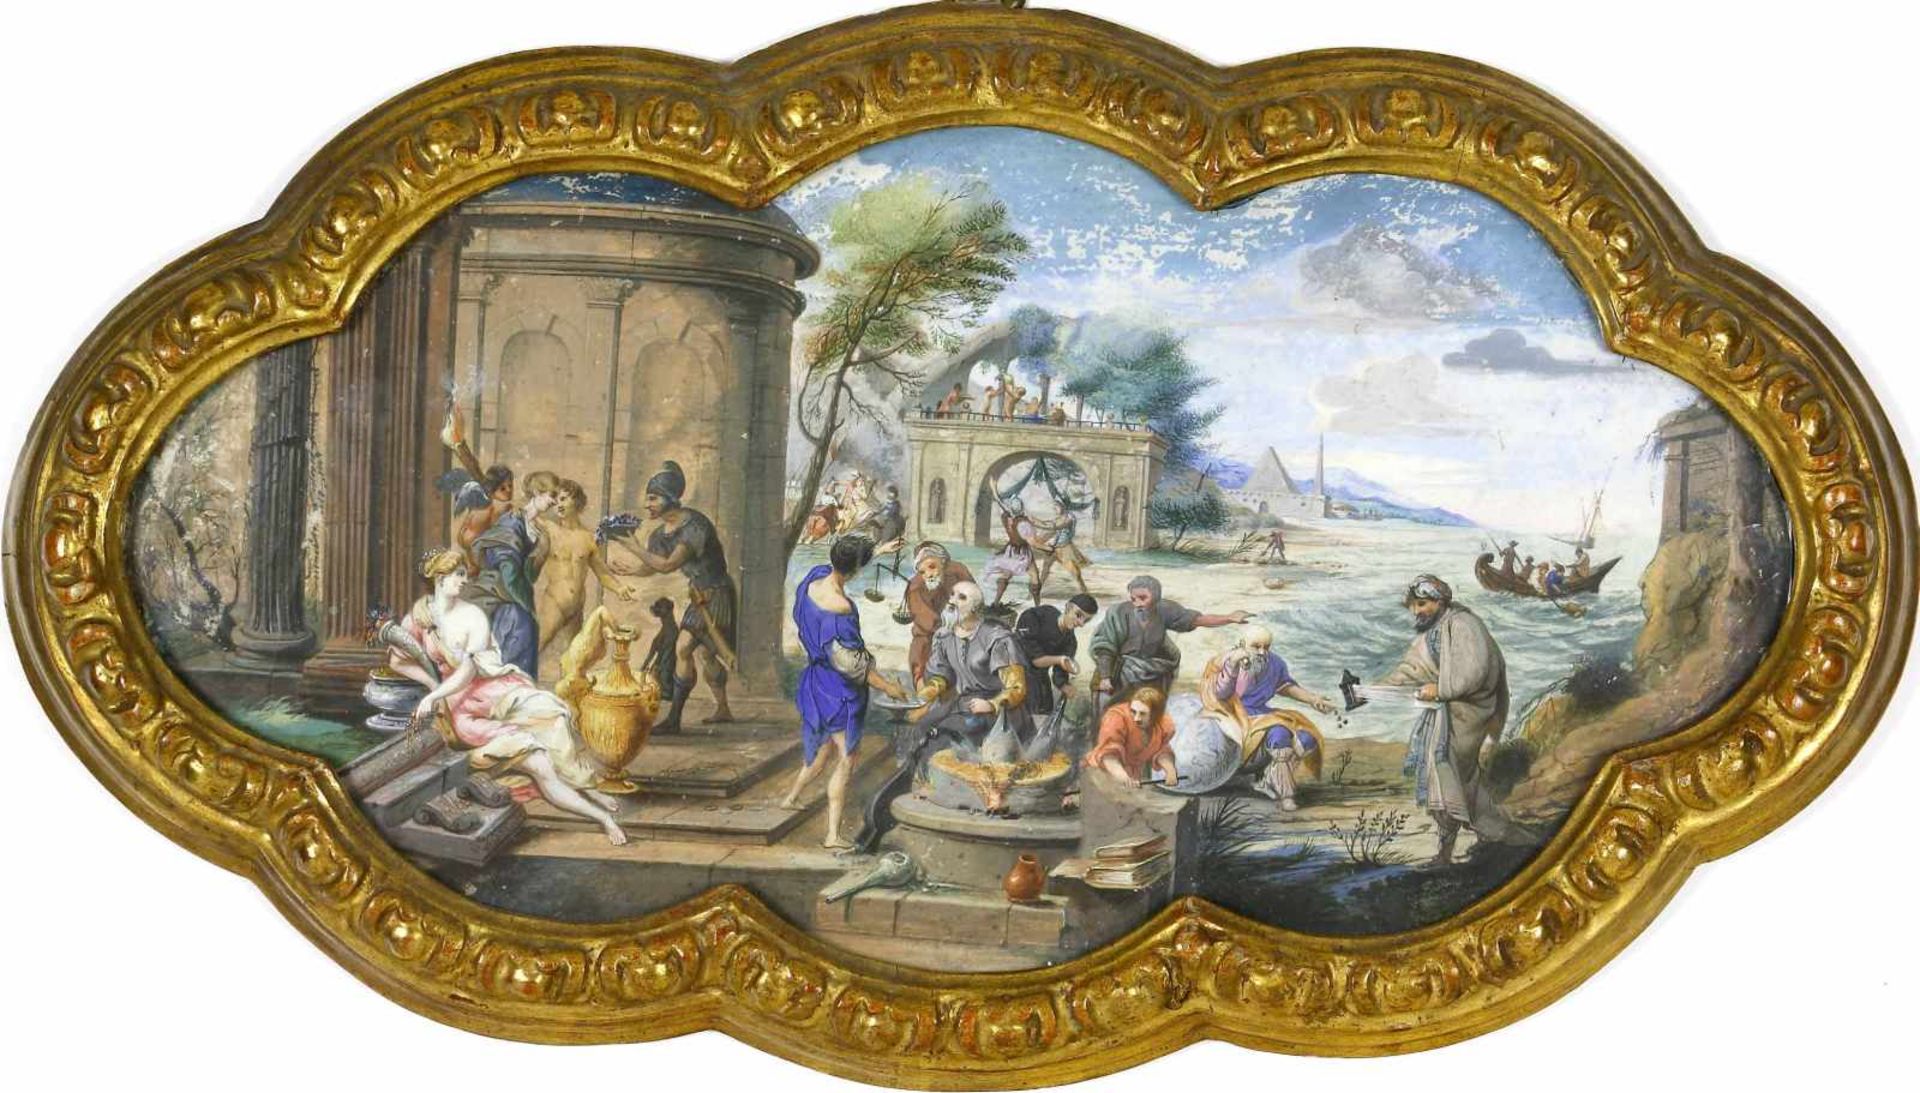 Zeichner um 1800Antikisierende Darstellung einer Landschaft mit zahlreichen Personen, Ruinen, am